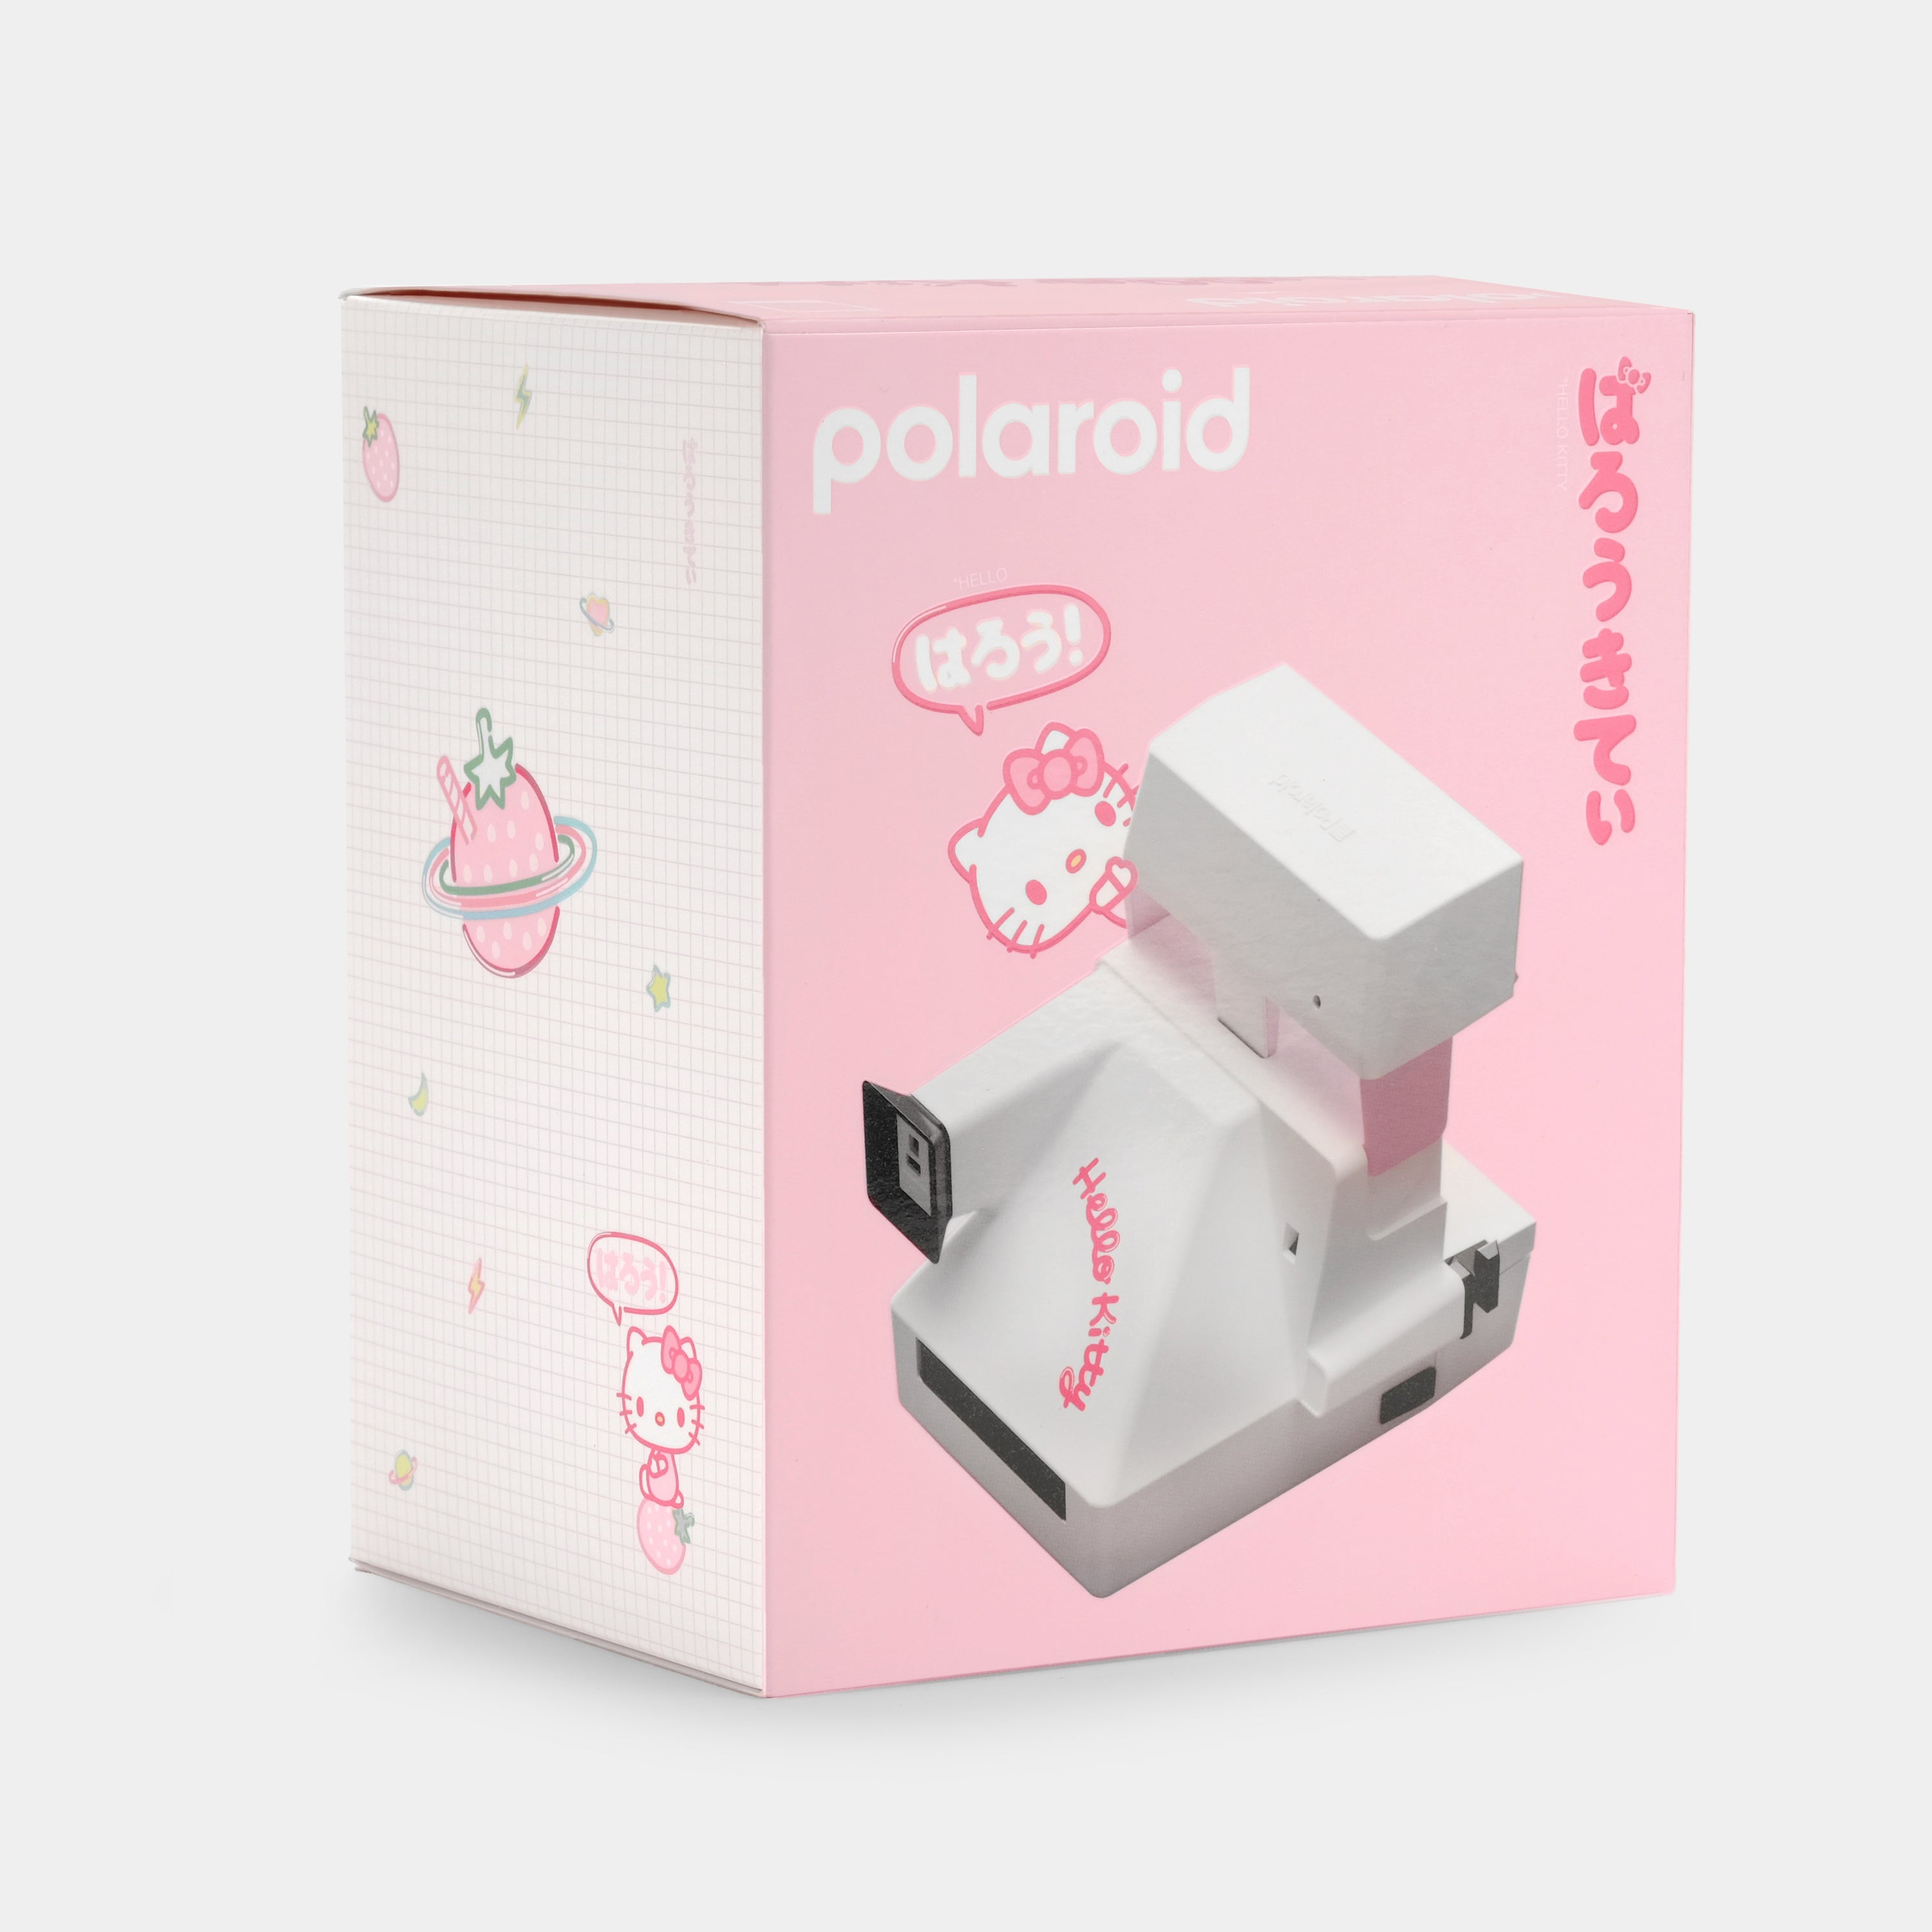 Polaroid 600 Hello Kitty Strawberry Kawaii Instant Film Camera